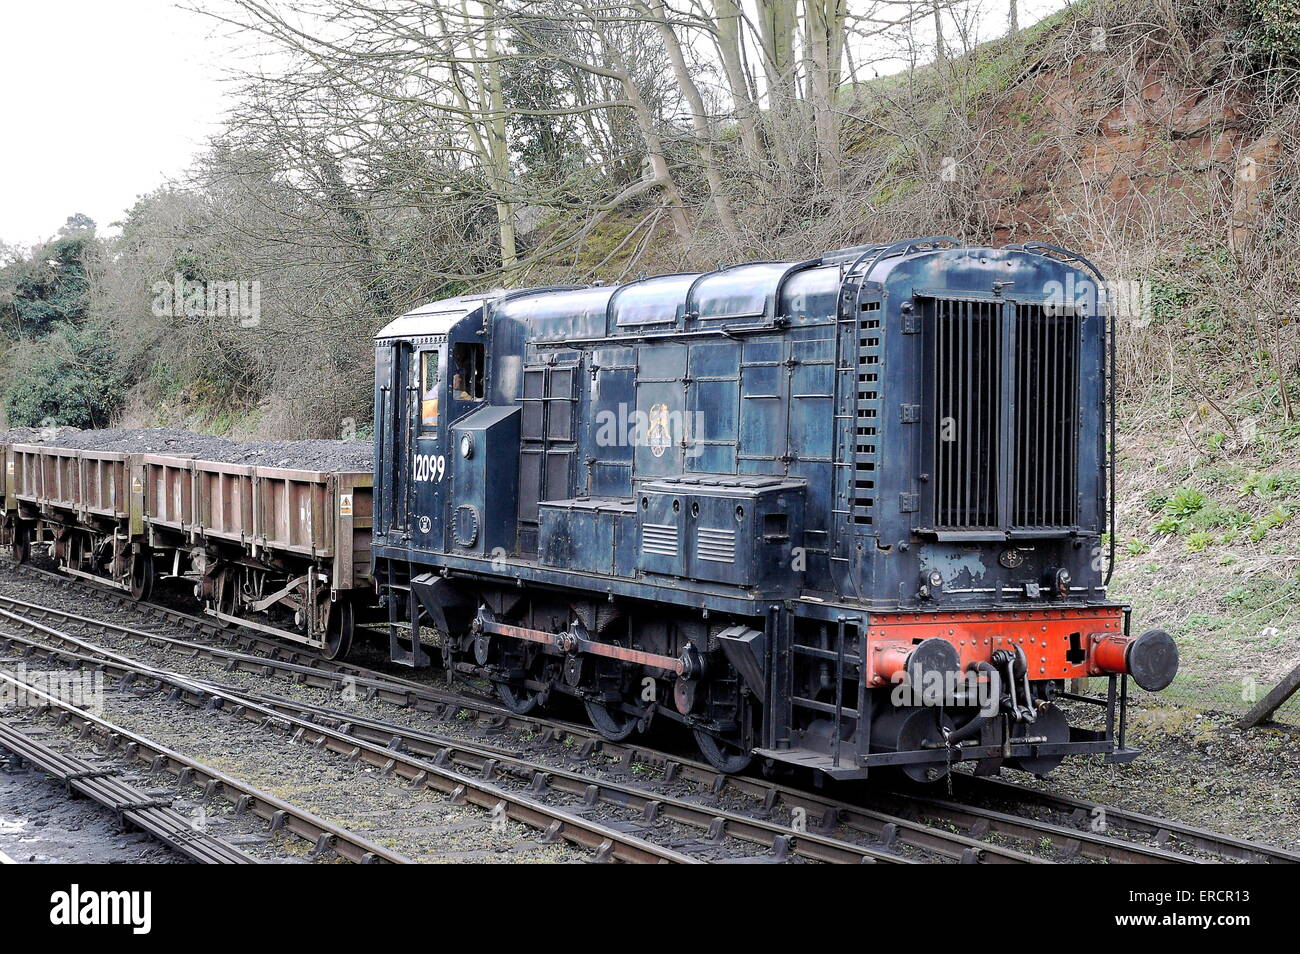 British Railways Class Locomotive no 11 12099 semblent ici à Bridgnorth sur la vallée de la Severn. Banque D'Images